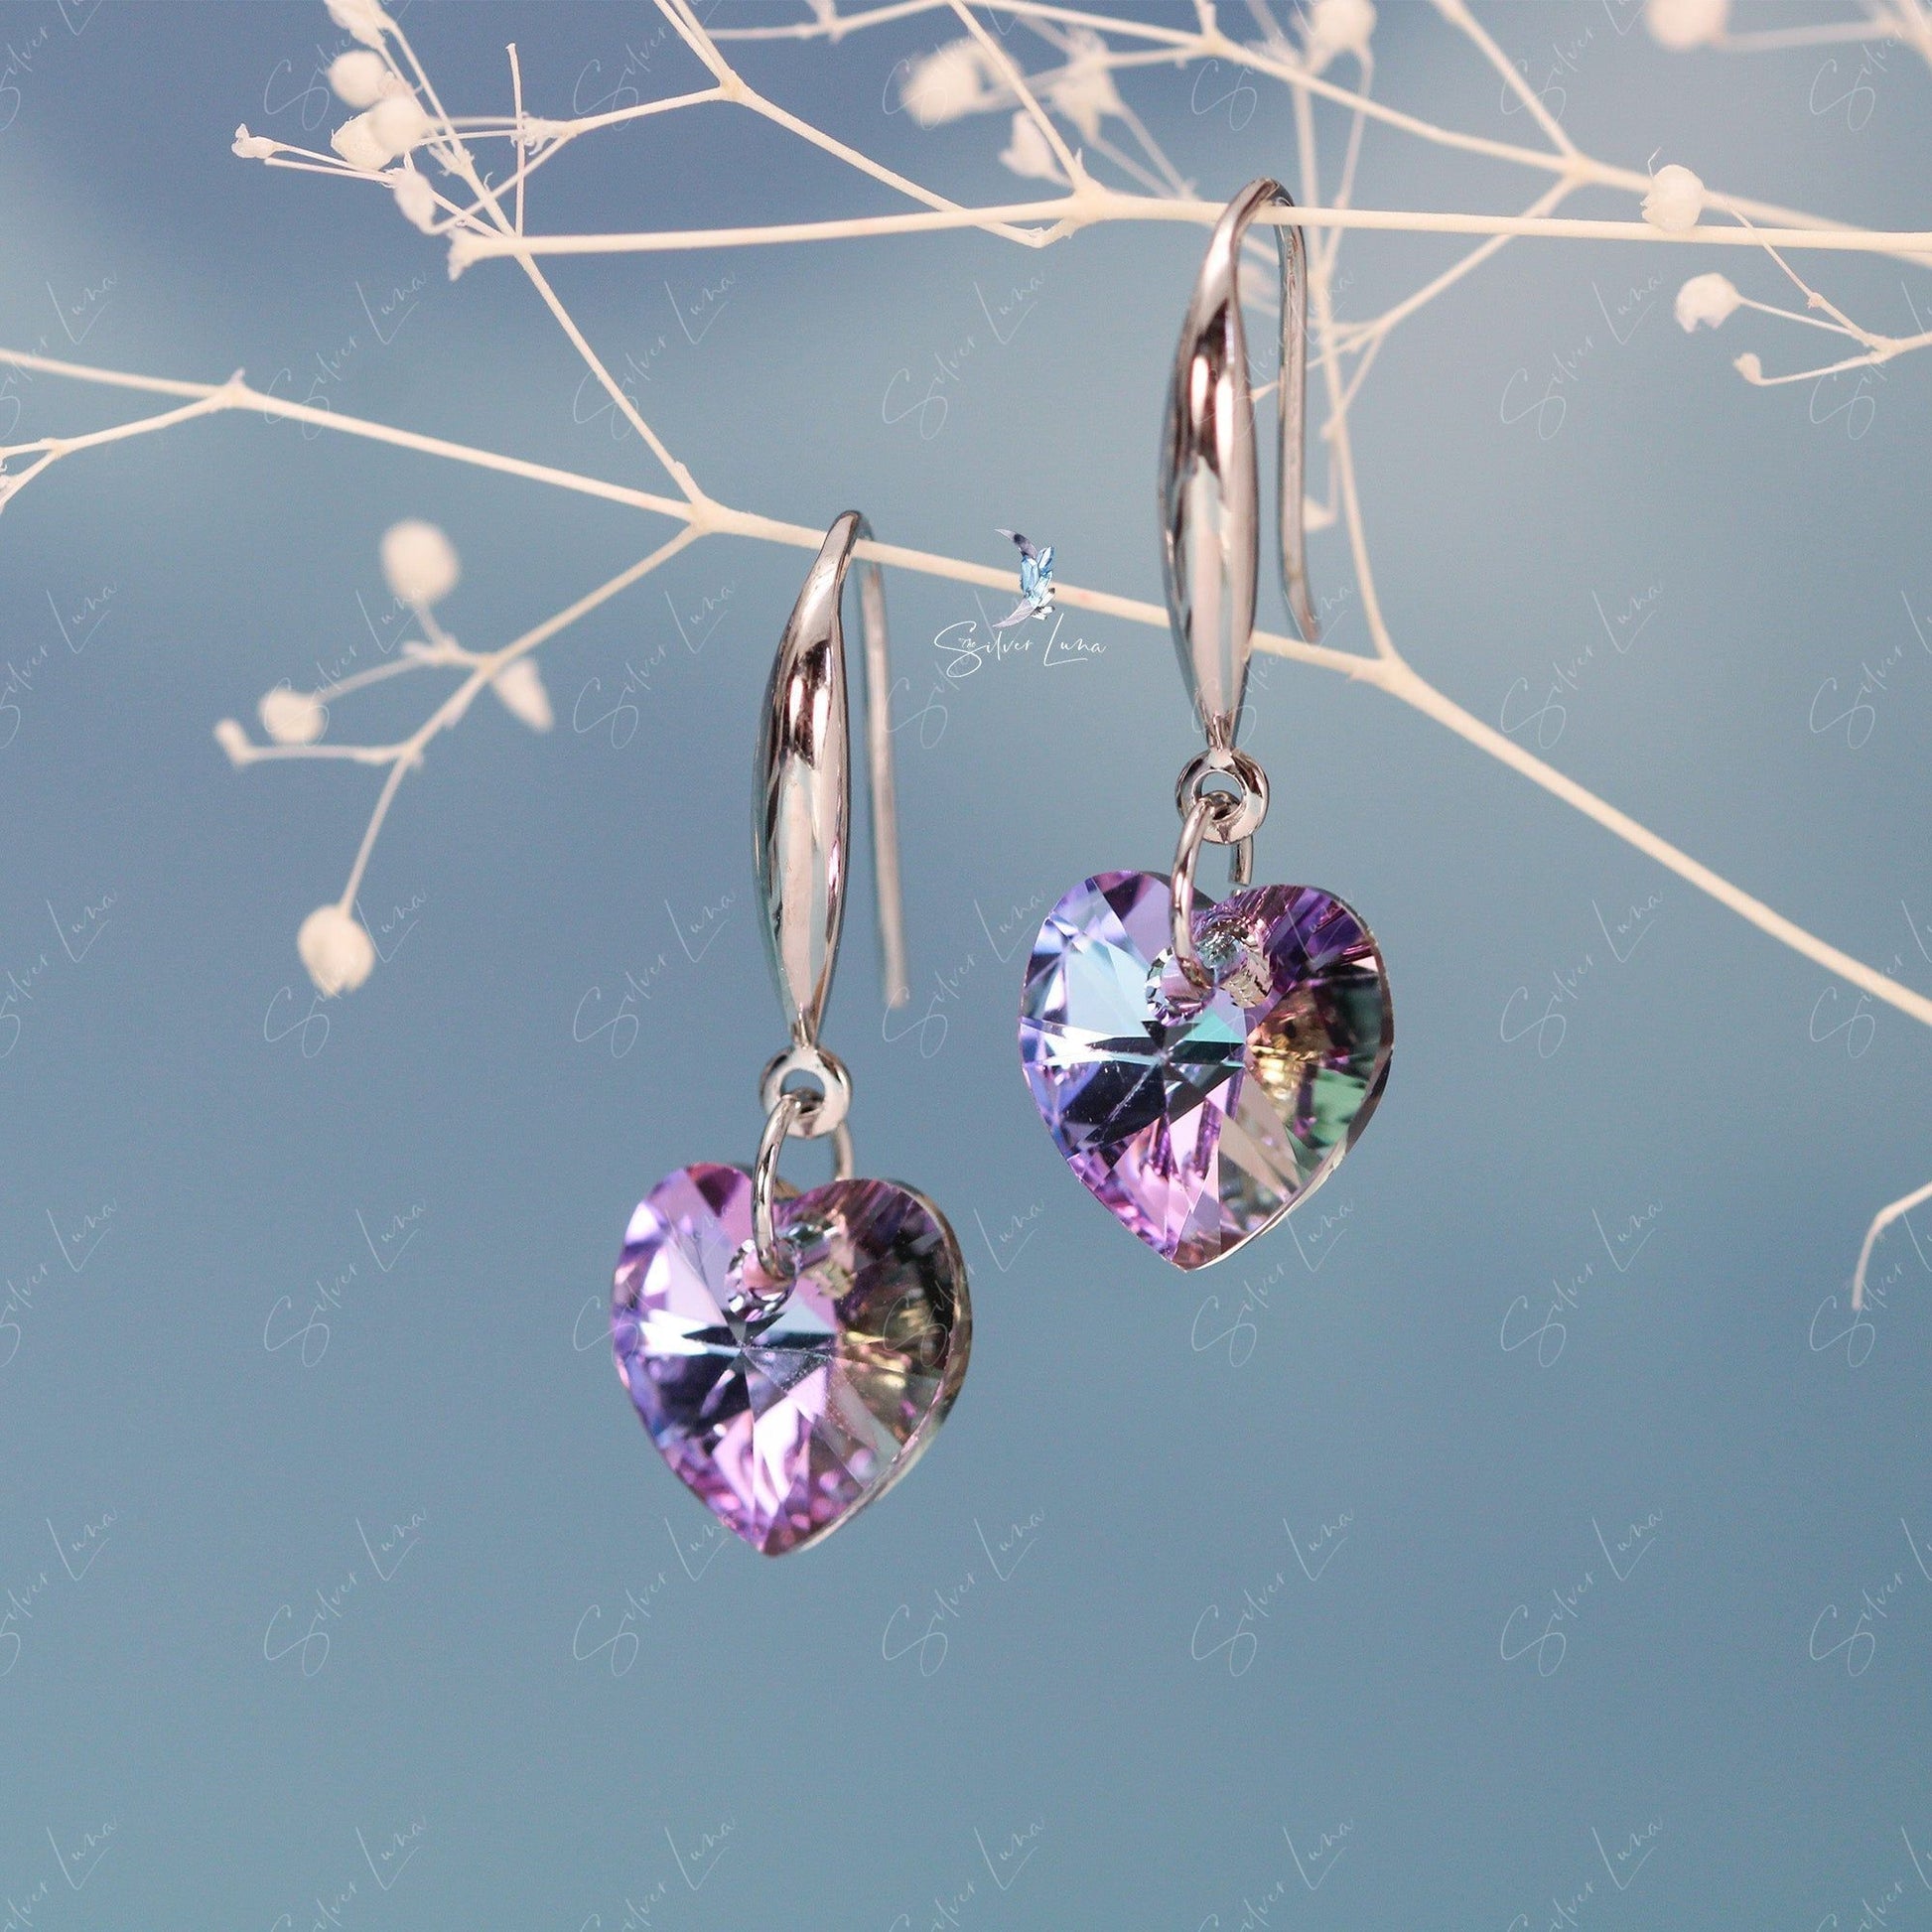 crystal heart earrings